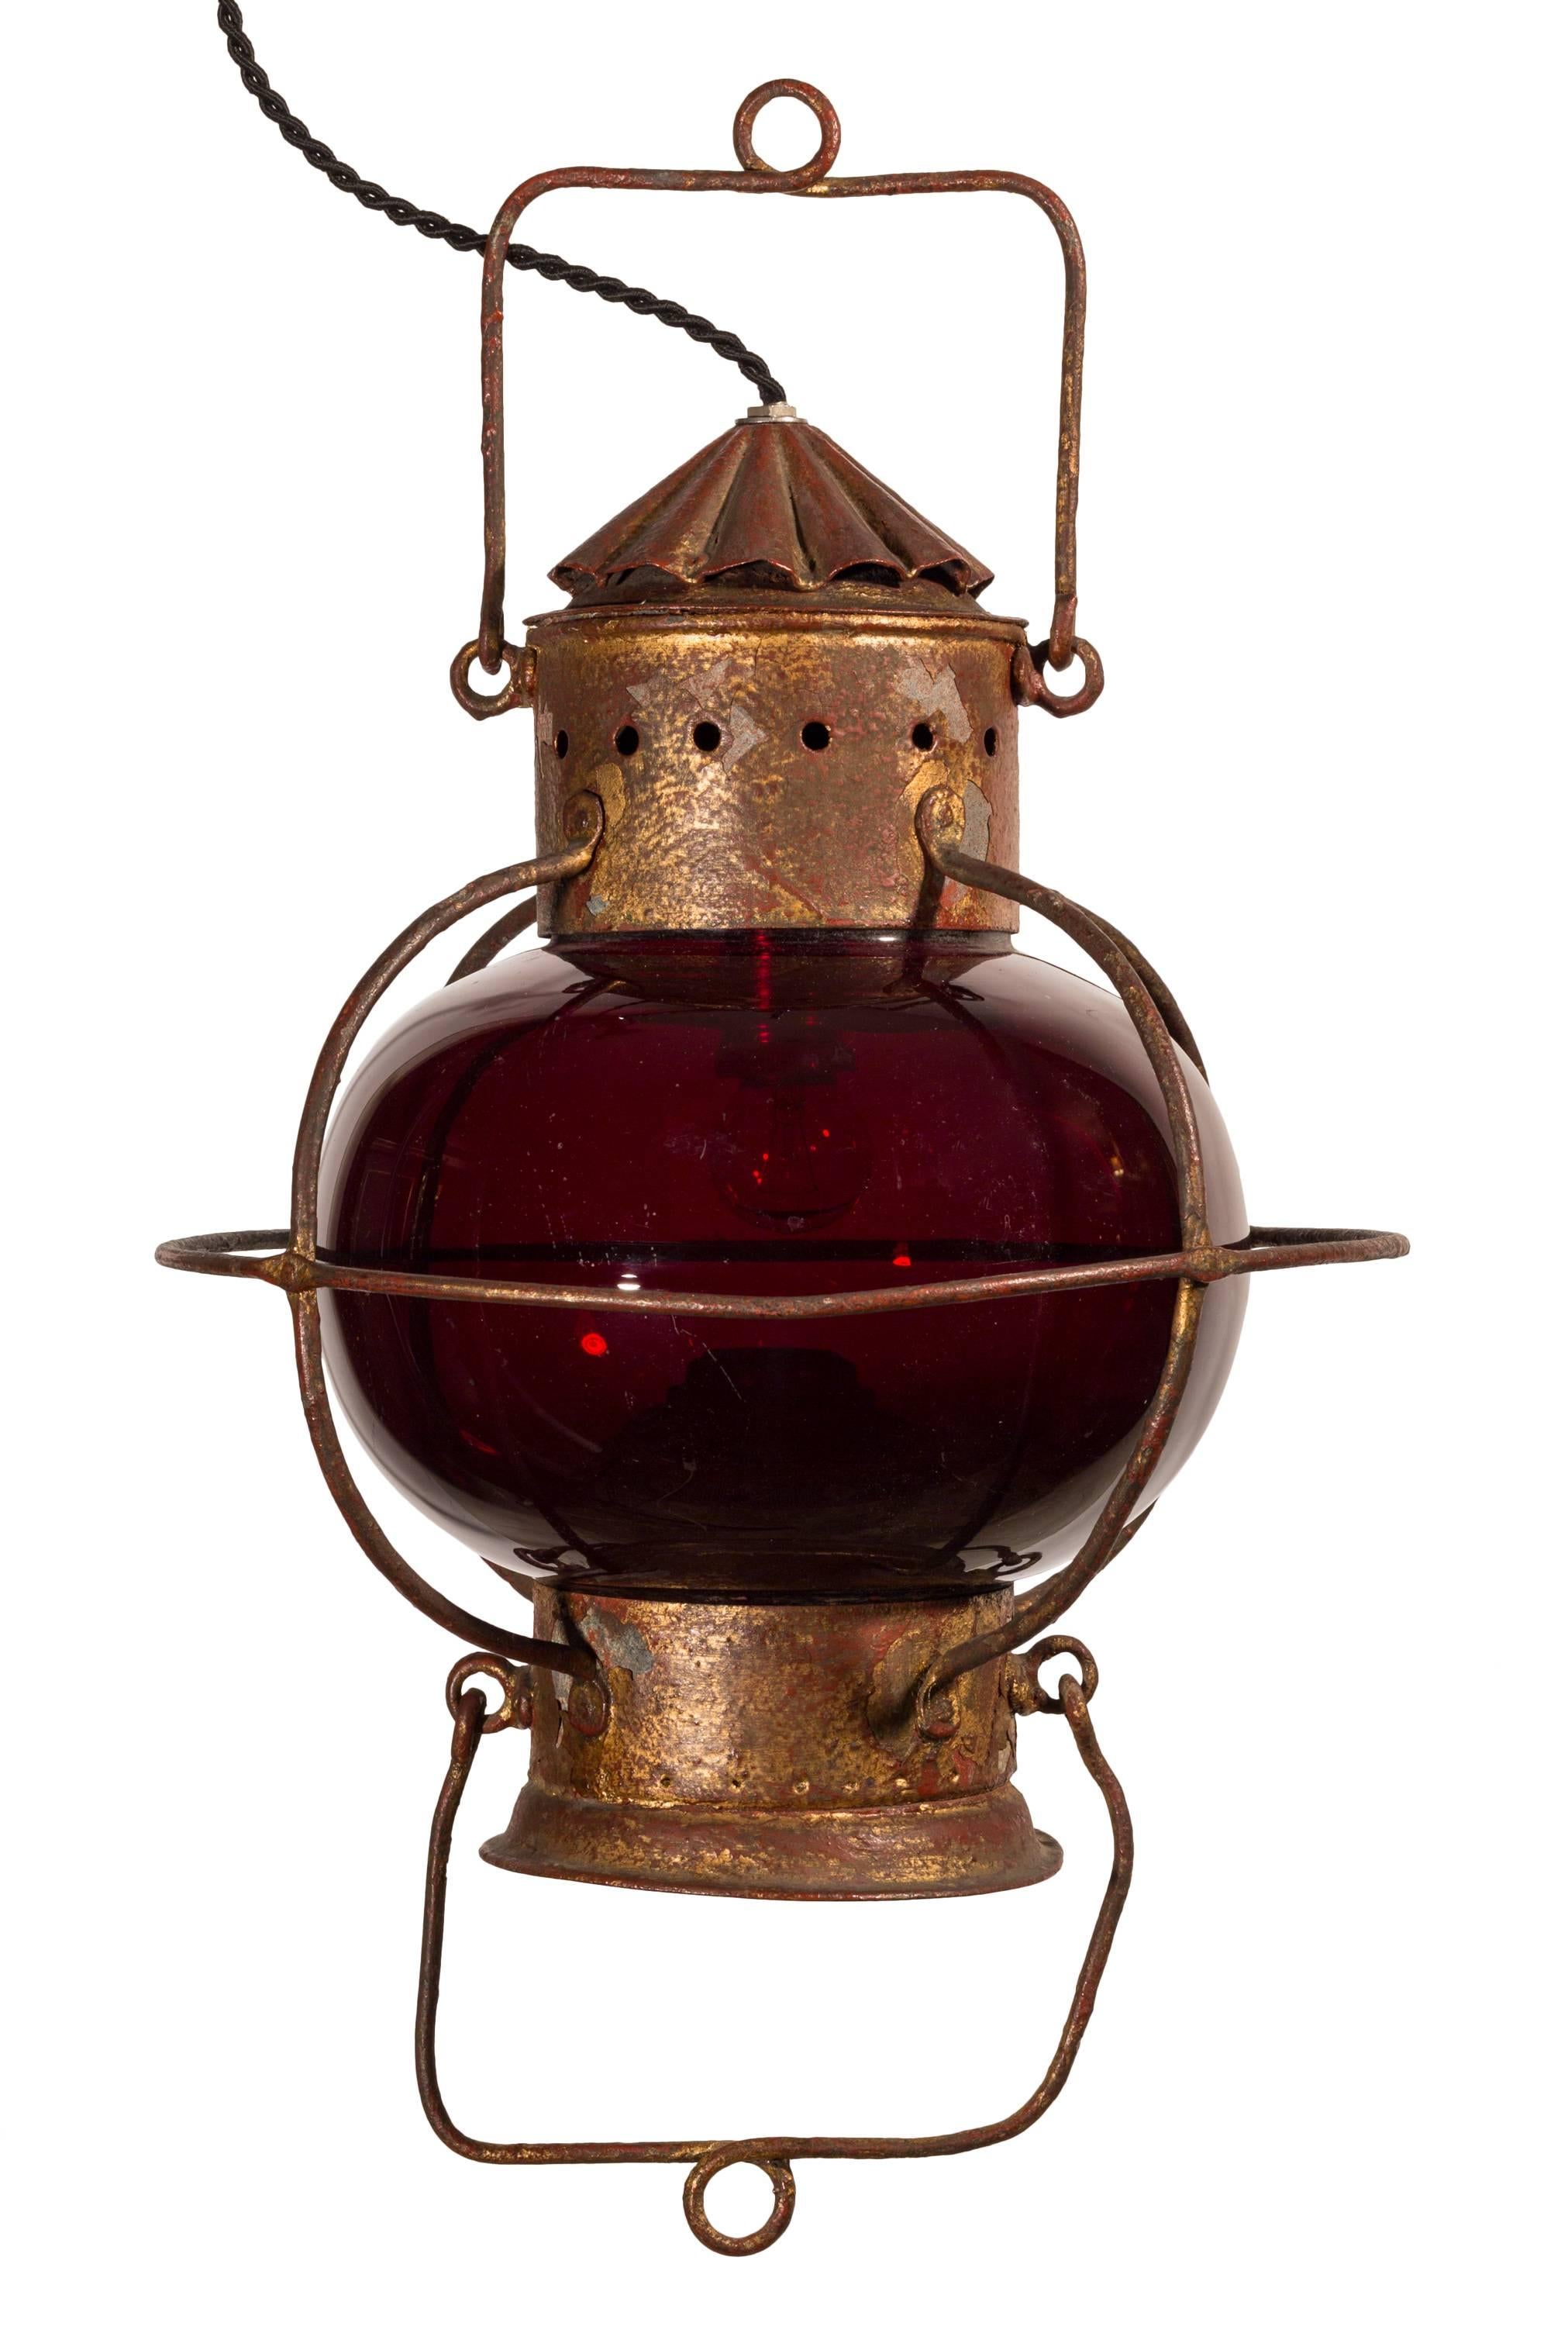 Einzigartiges Paar nautischer Öllampen aus dem späten 19. Jahrhundert mit makellosen roten Kugeln.
Diese beiden in Größe und Form ähnlichen Lampen wurden ursprünglich mit einer Kerosin- oder Ölflamme beleuchtet, und das Reservoir und der Docht sind